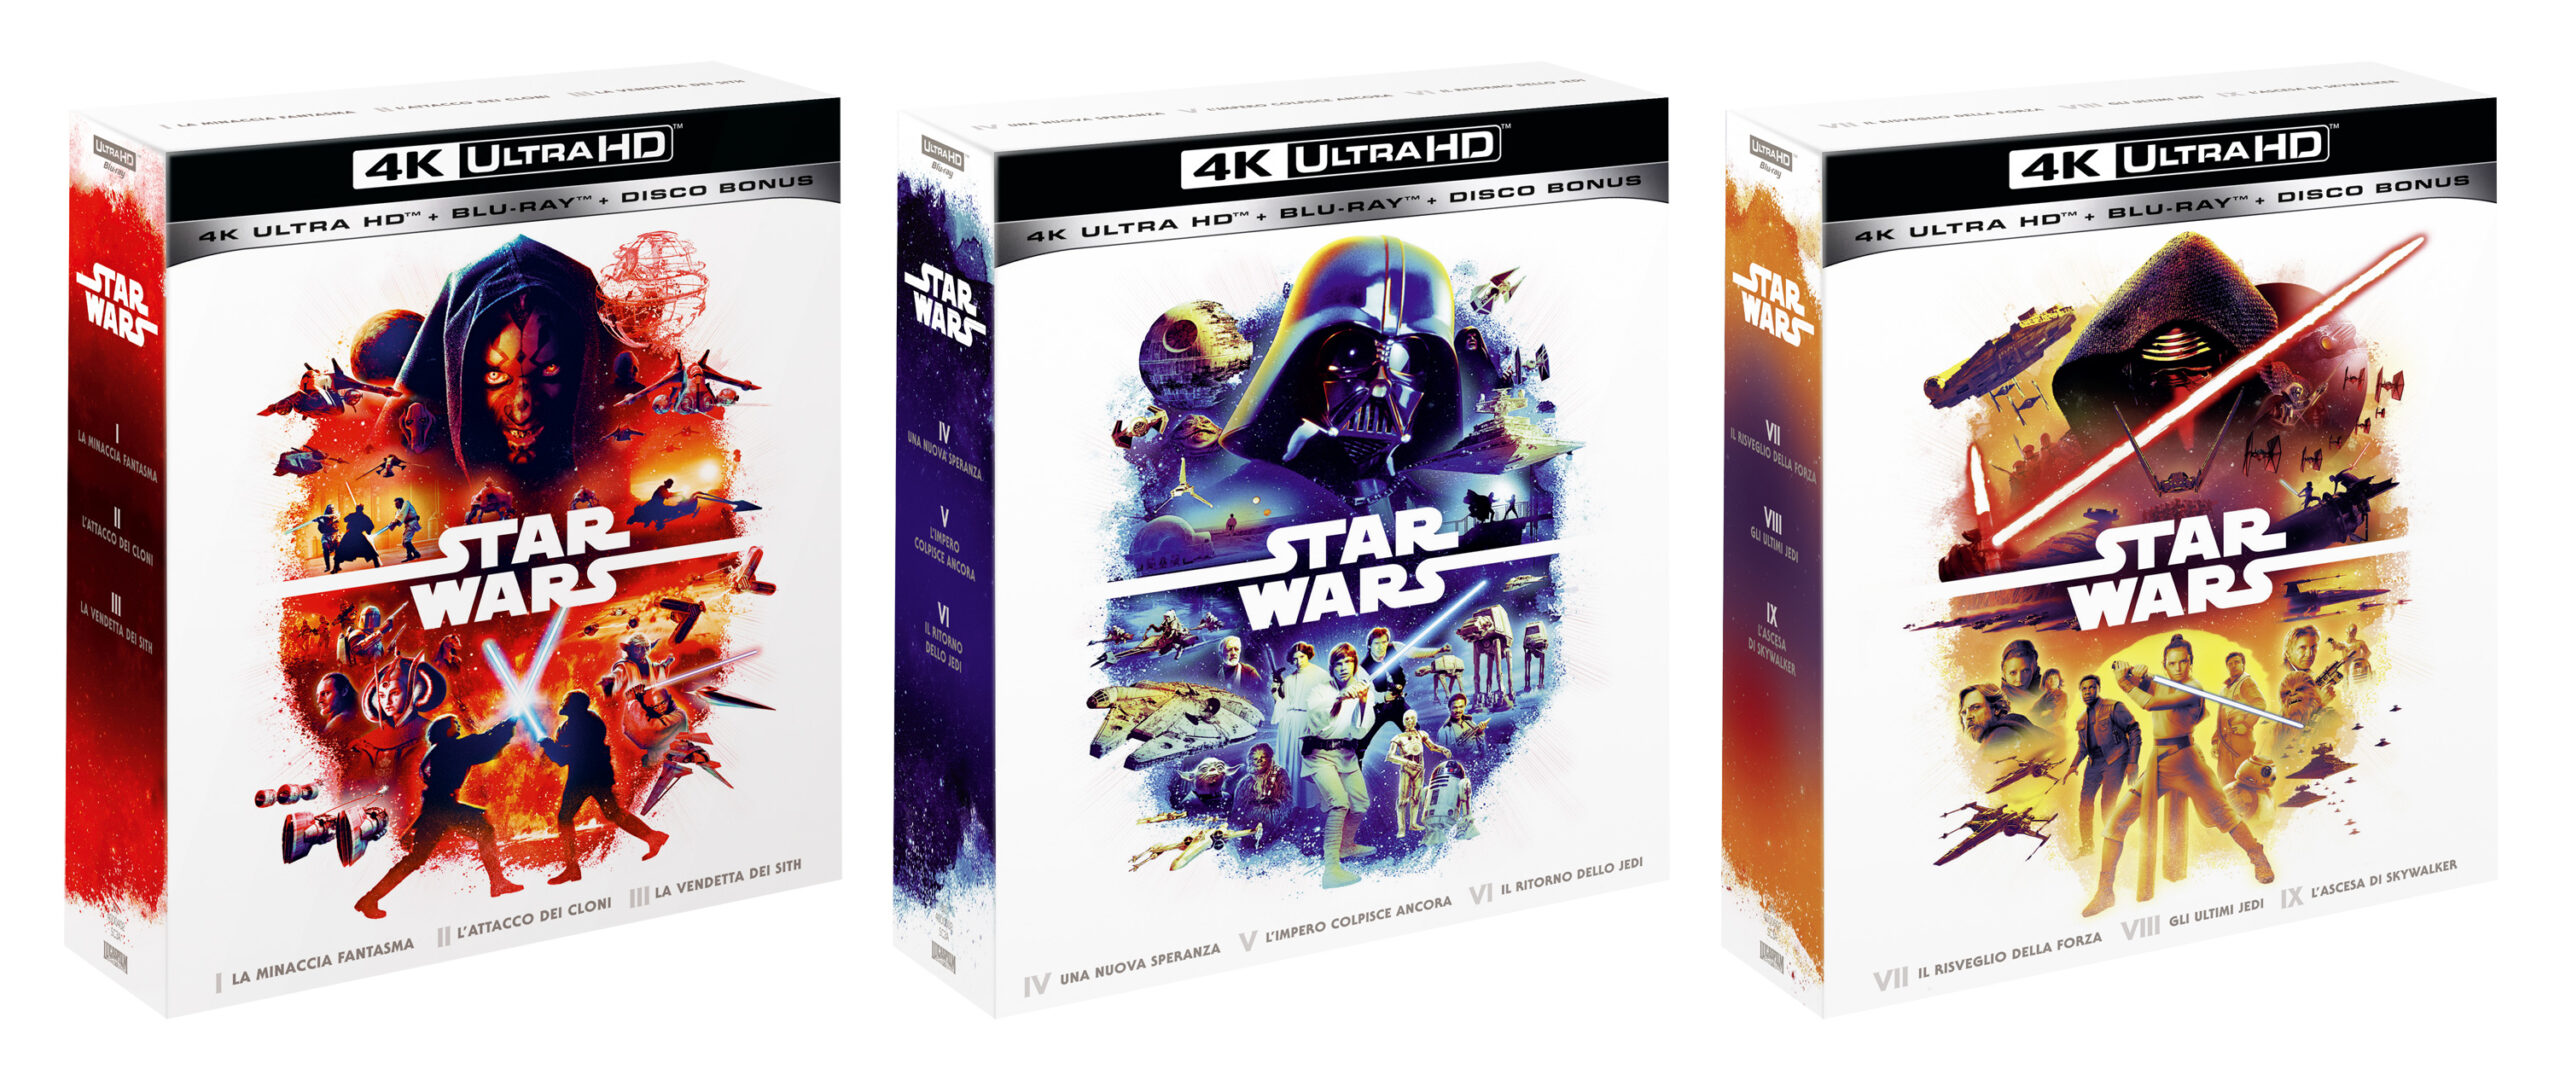 Star Wars, disponibili 3 nuove collezioni per rivedere tutta la saga in 4k UHD